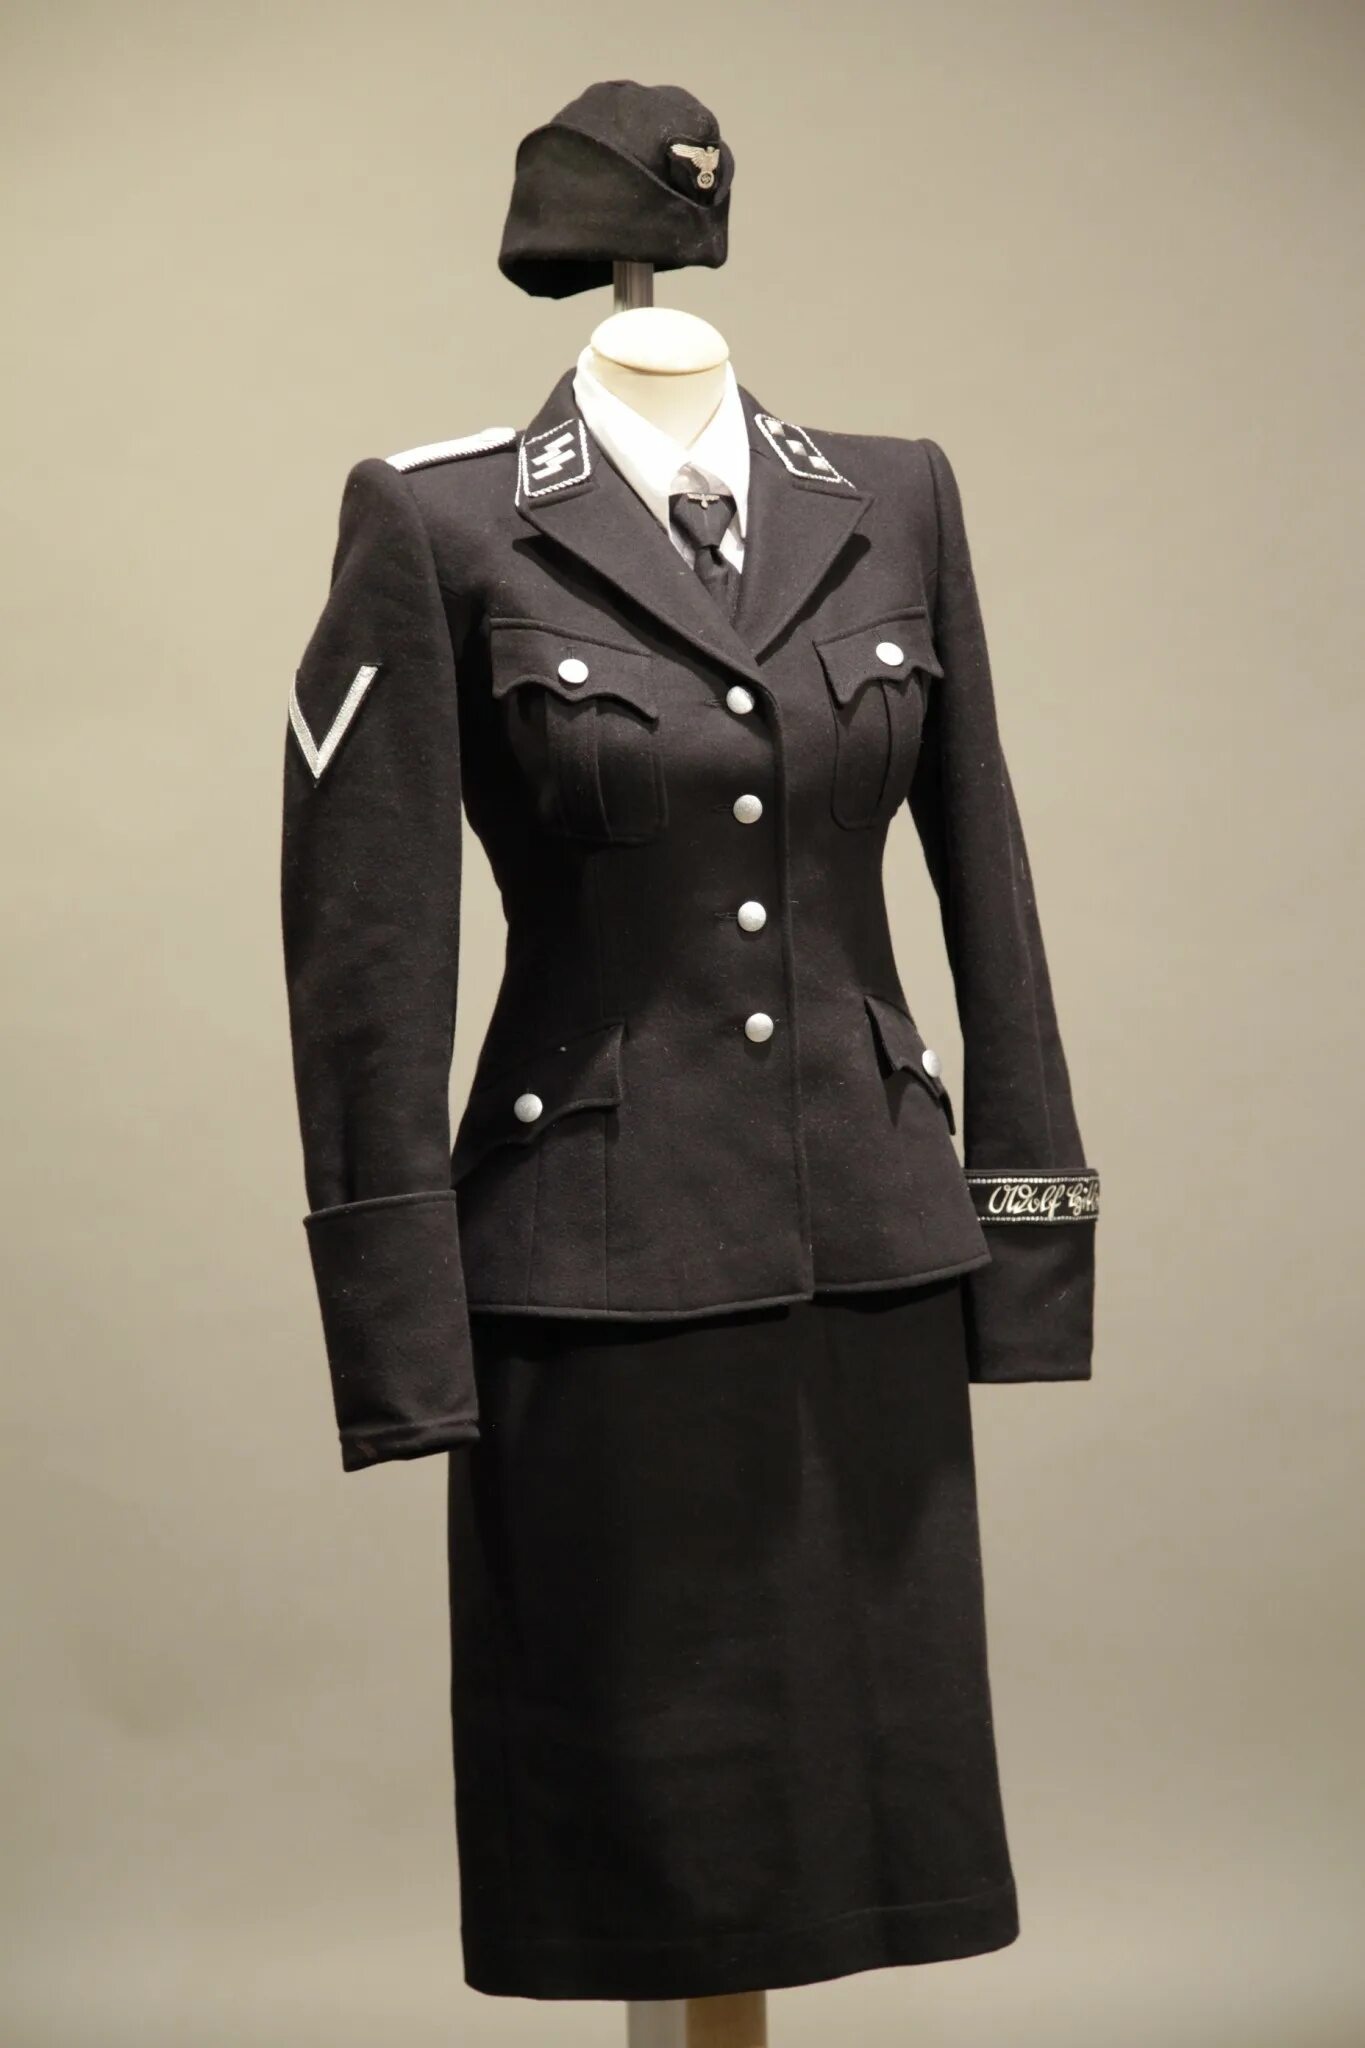 Форма СС нацистской Германии женская. SS — Helferinnen форма. Хьюго босс униформа СС. Немецкая Военная форма 1941-1945 женская. Фашистская женщина